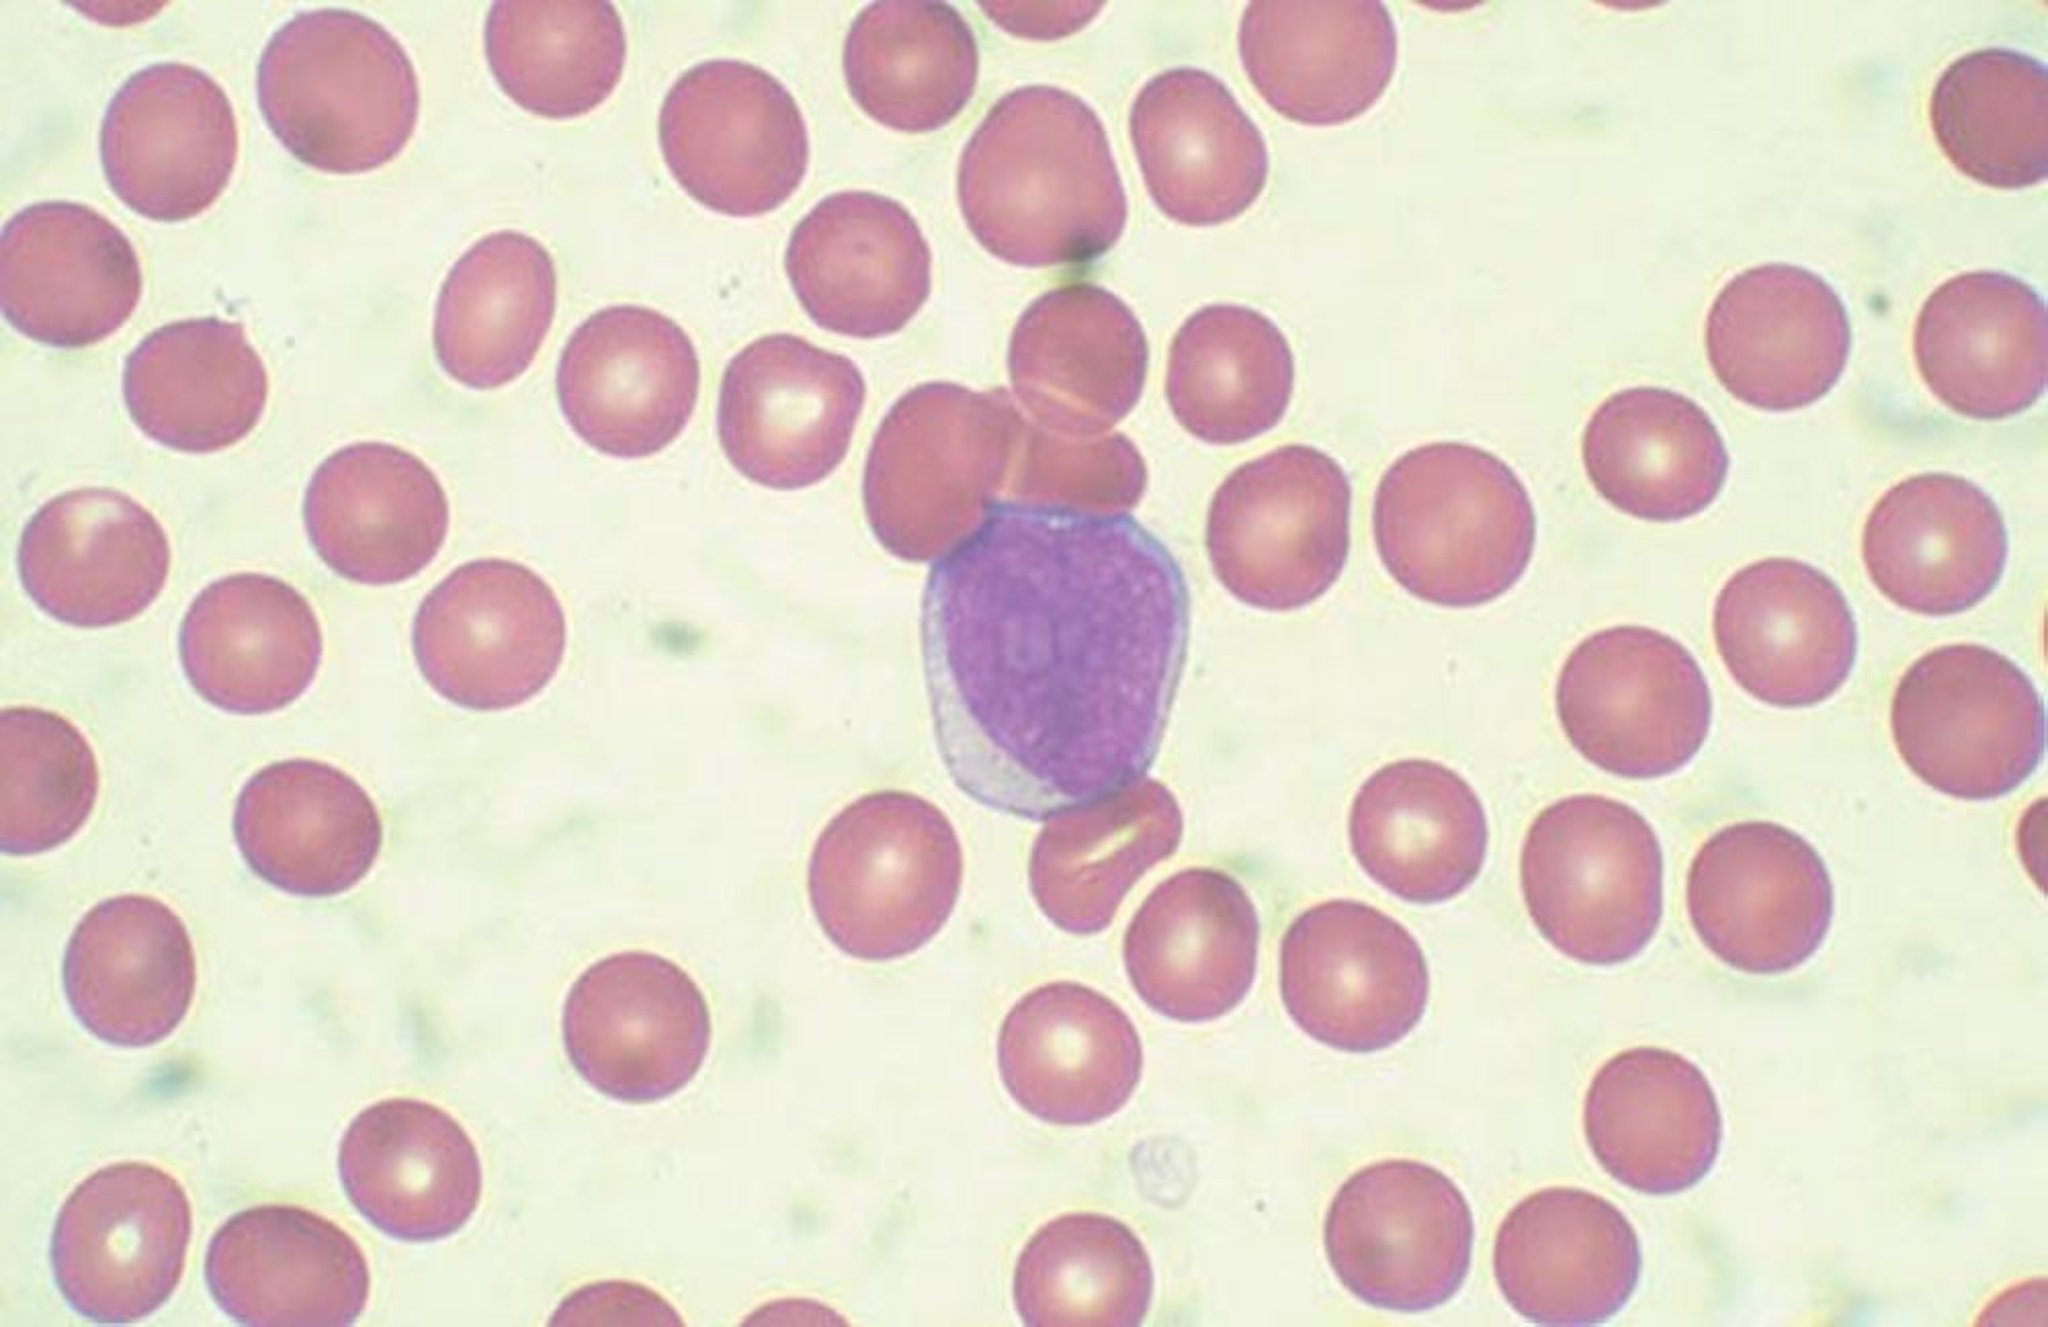 Blastocitos en sangre periférica